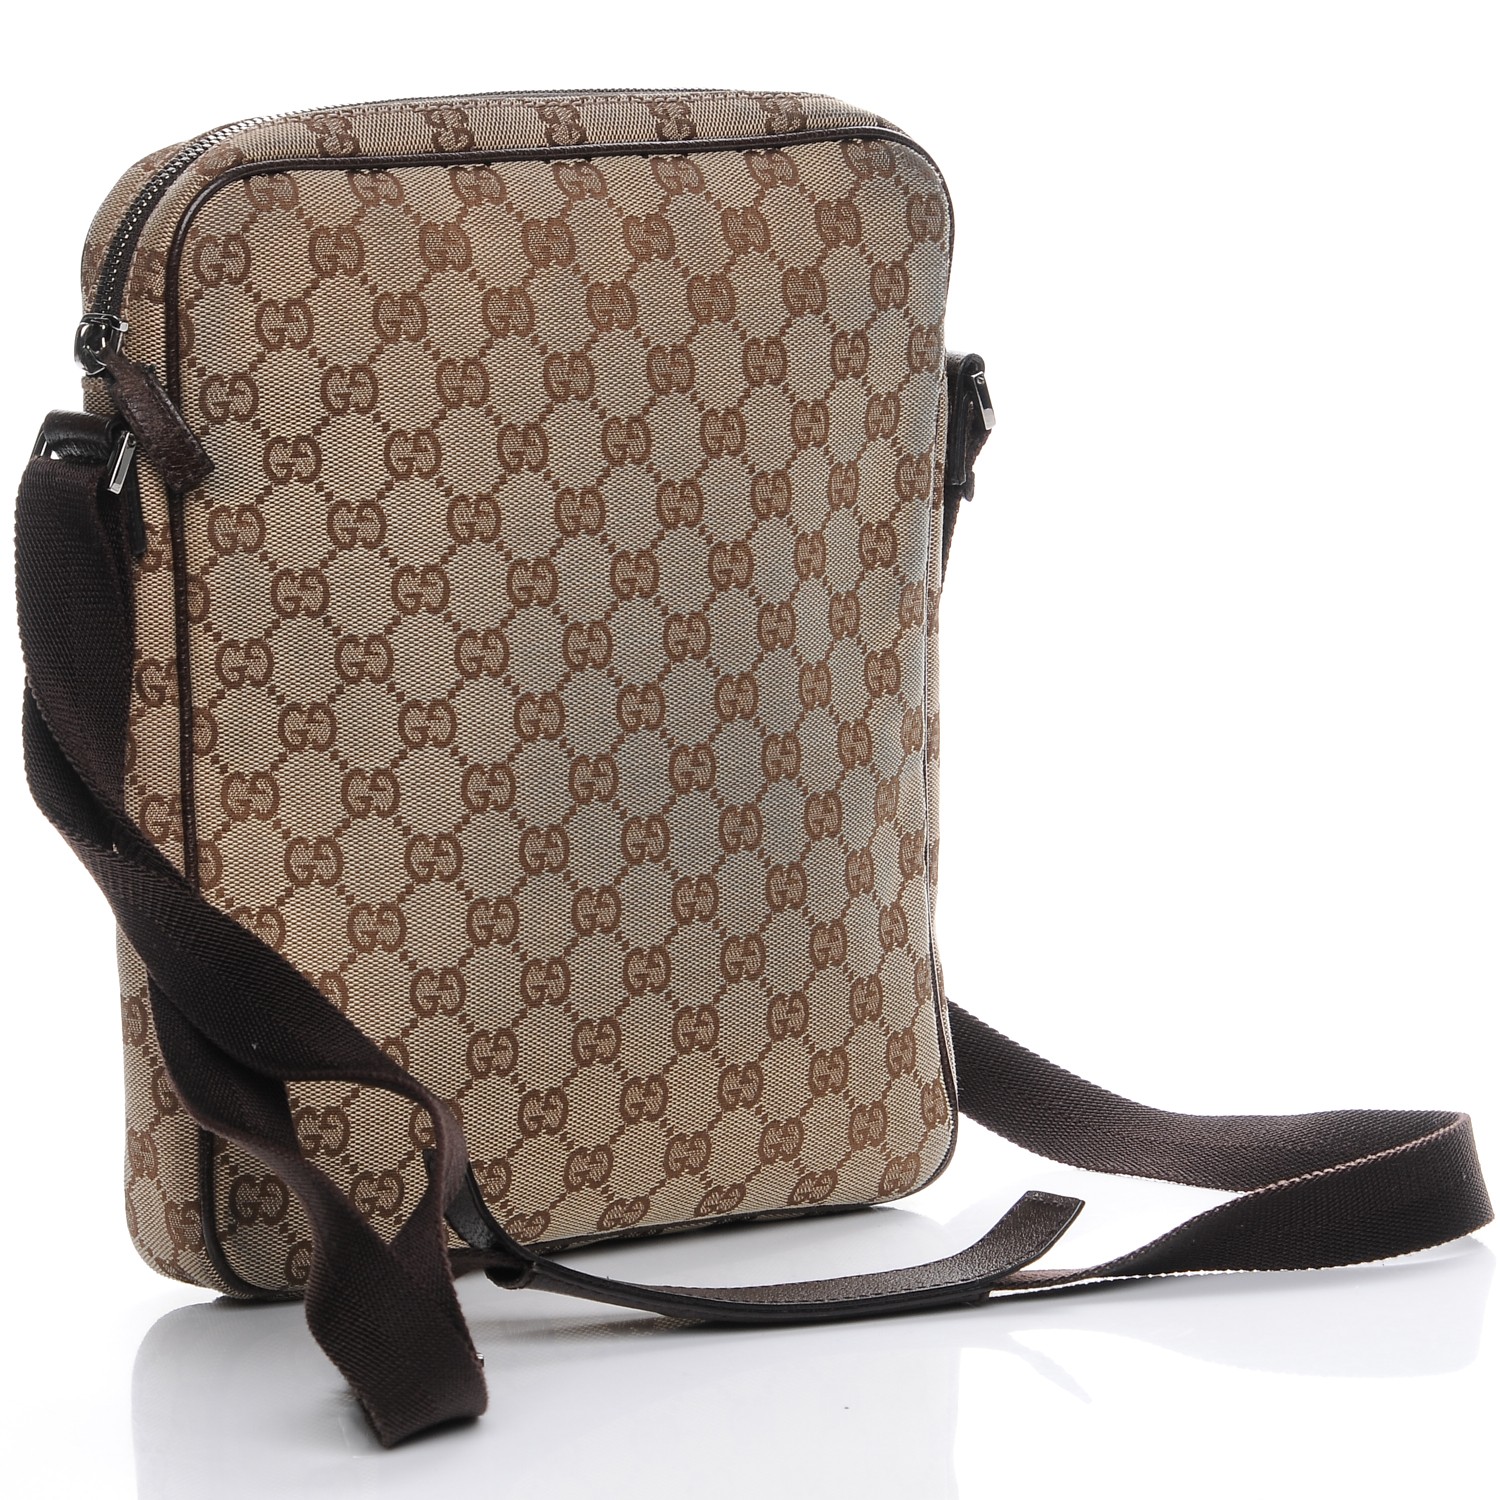 Gucci Monogram Messenger Bag | IQS Executive